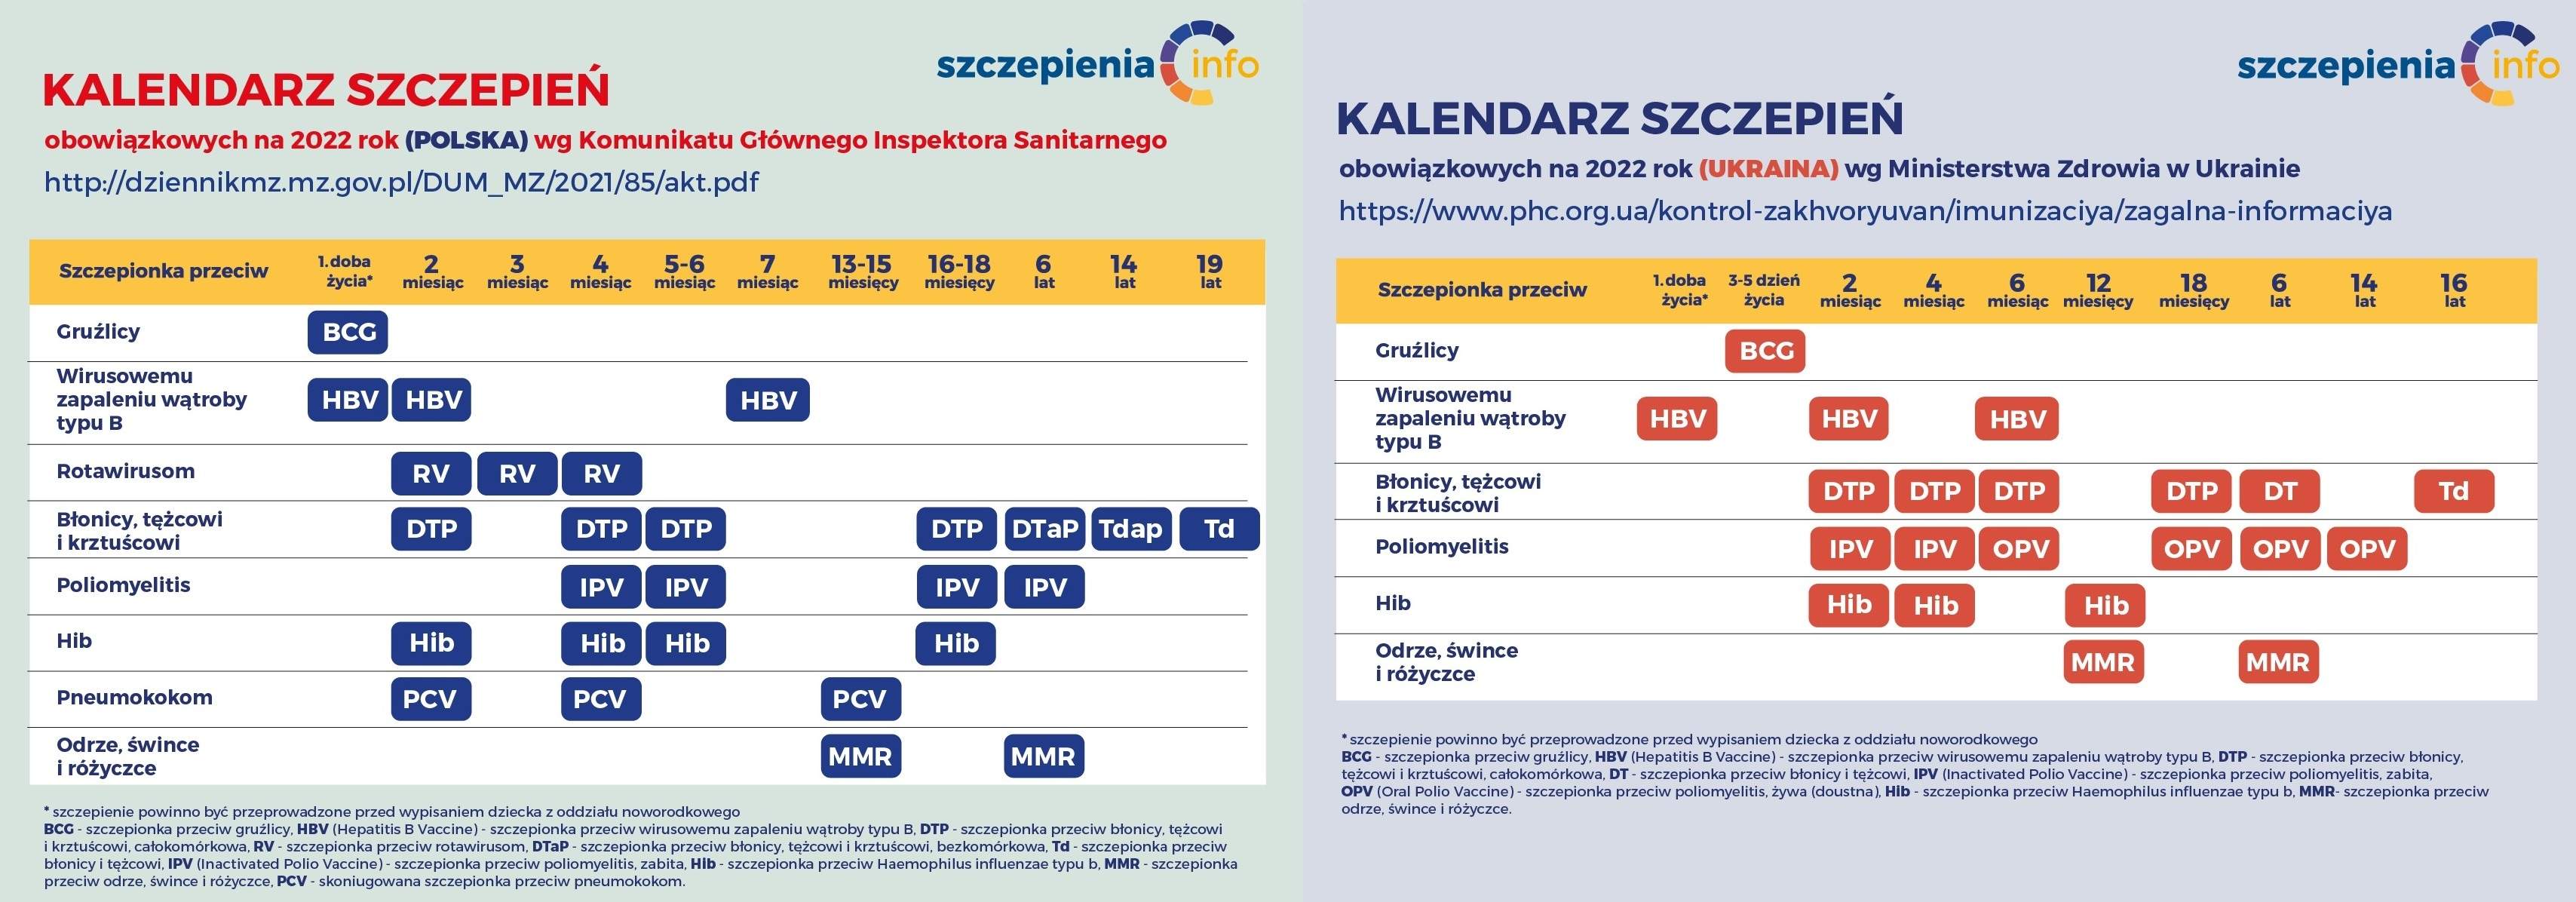 Polski kalendarz szczepień na 2022 rok i ukraiński kalendarz szczepień na 2022 rok.